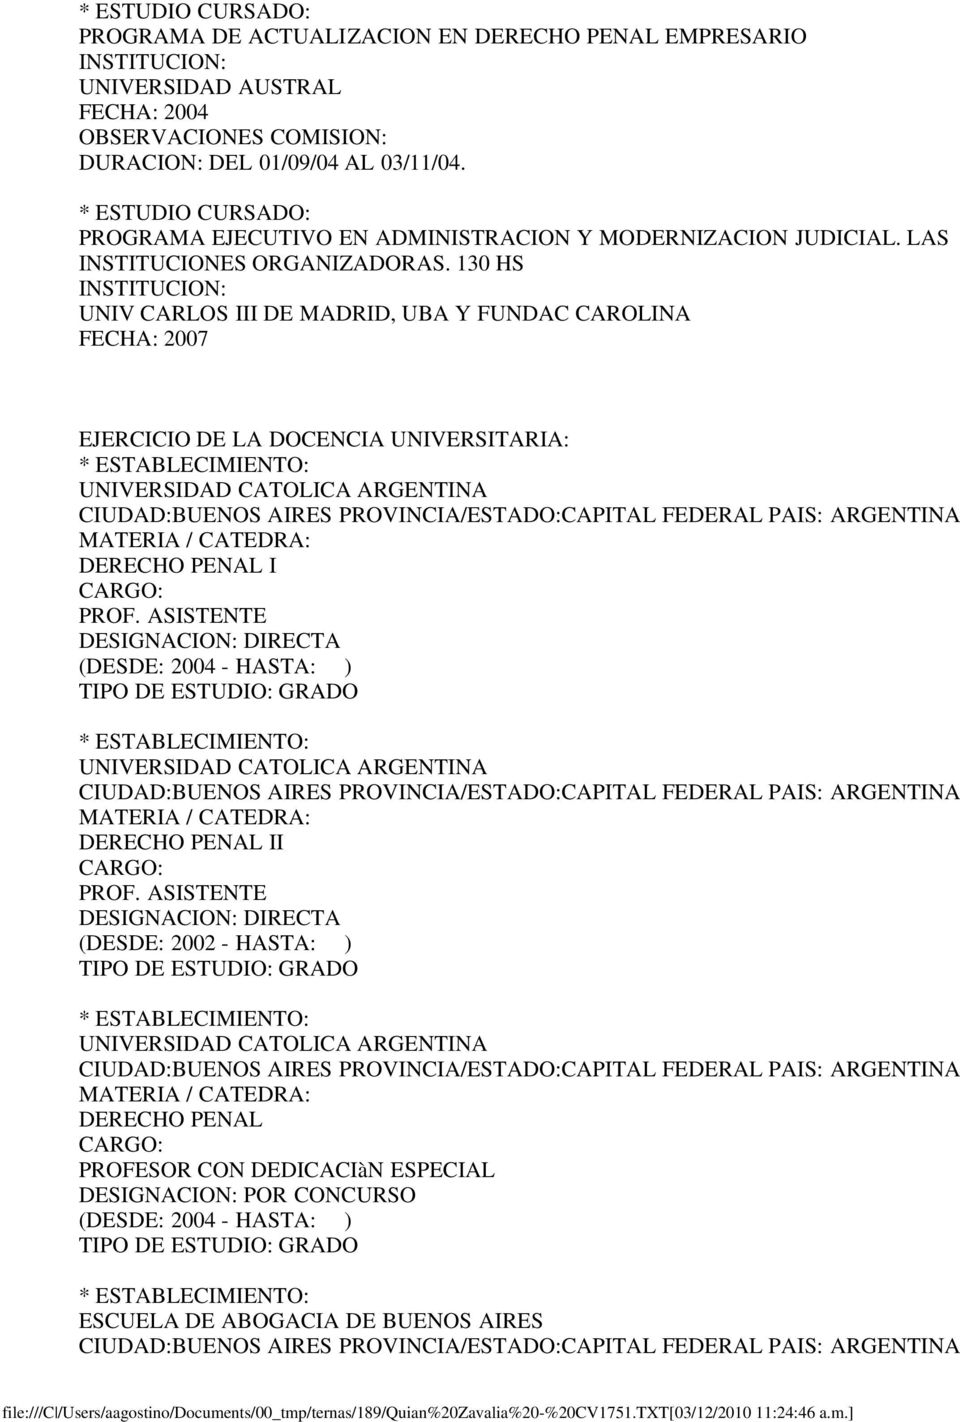 130 HS UNIV CARLOS III DE MADRID, UBA Y FUNDAC CAROLINA FECHA: 2007 EJERCICIO DE LA DOCENCIA UNIVERSITARIA: ESTABLECIMIENTO: CIUDAD:BUENOS AIRES PROVINCIA/ESTADO:CAPITAL FEDERAL PAIS: ARGENTINA